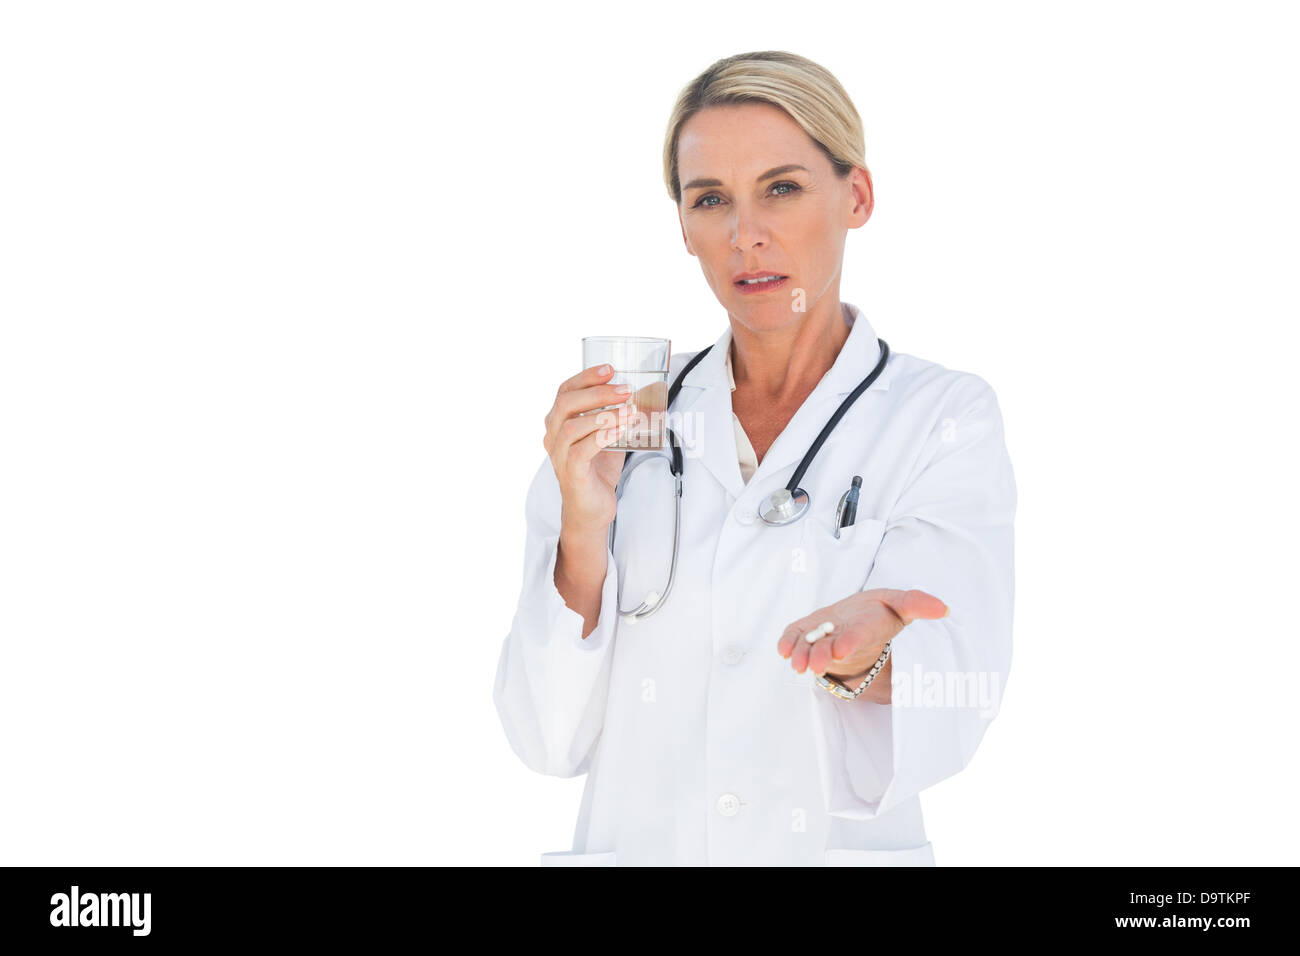 Stern médecin avec des médicaments et un verre d'eau dans ses mains Banque D'Images